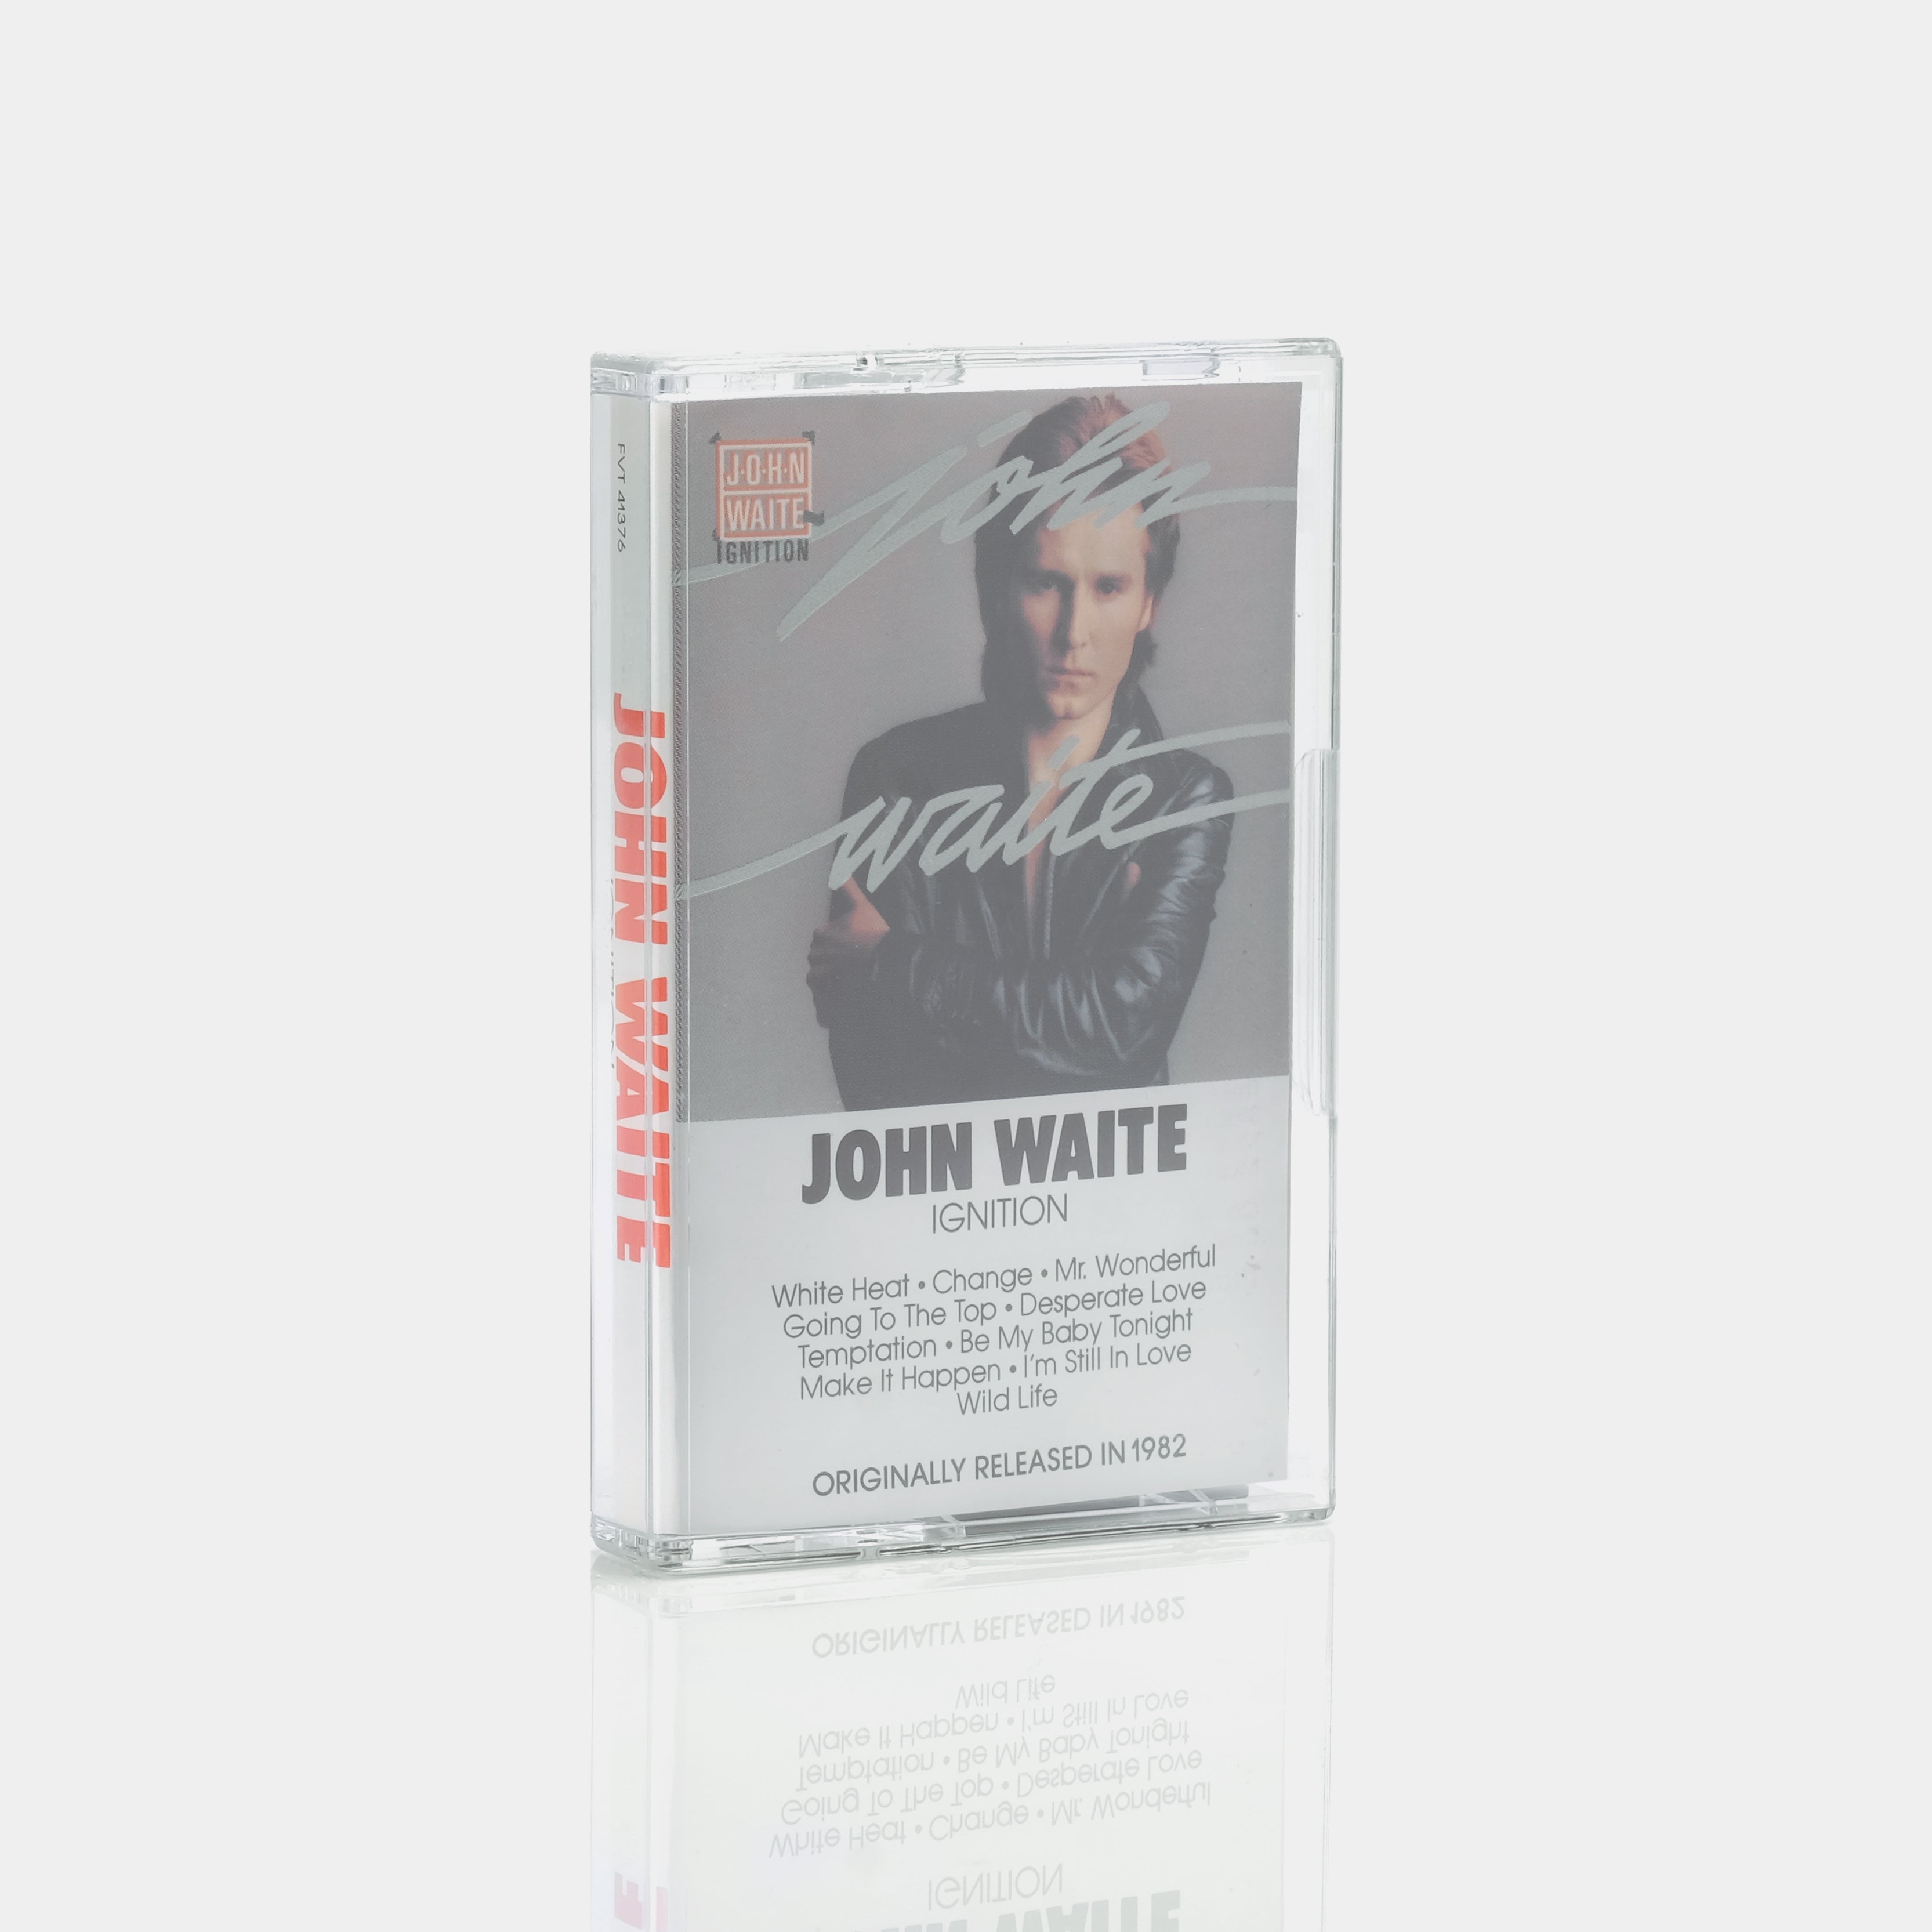 John Waite - Ignition Cassette Tape